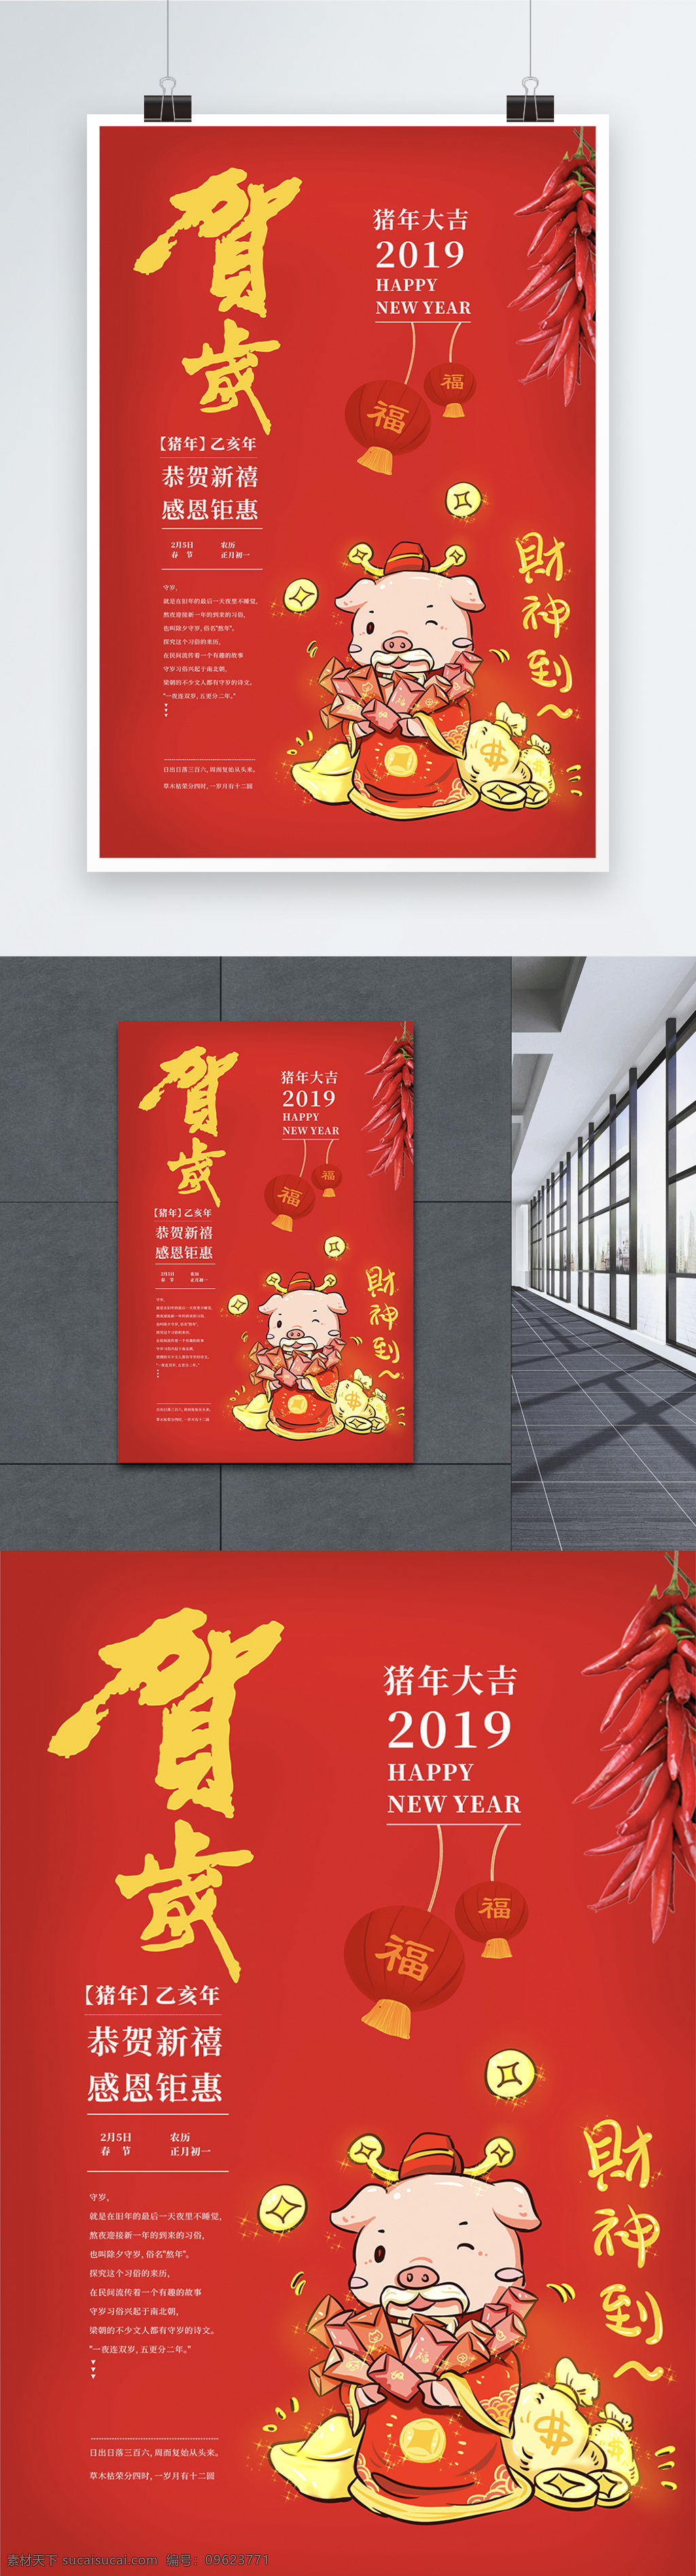 红色 新年 贺岁 春节 猪年 恭贺新禧 2019 新春 海报